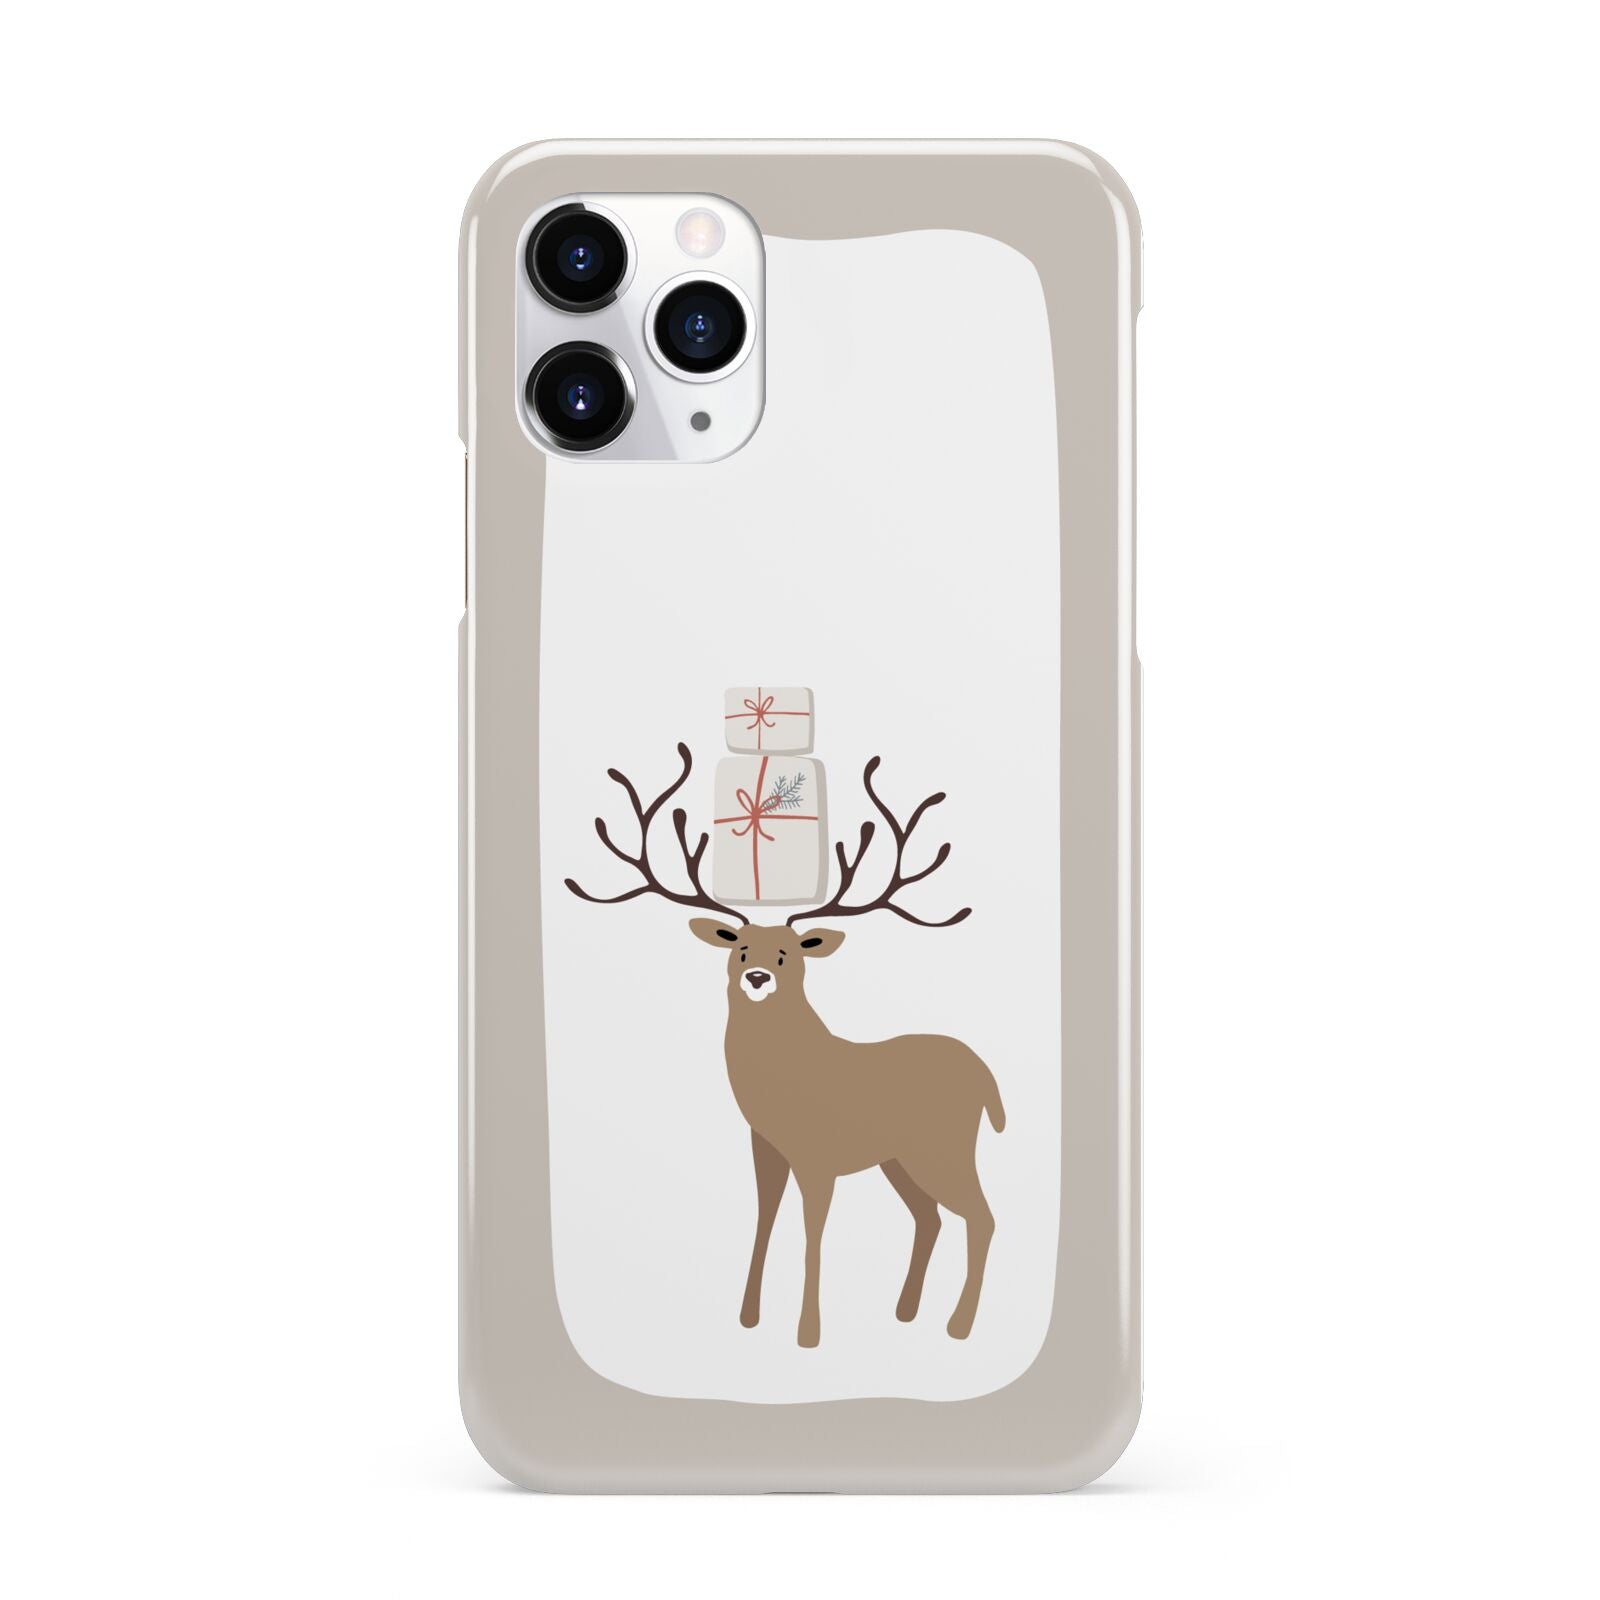 Reindeer Presents iPhone 11 Pro 3D Snap Case